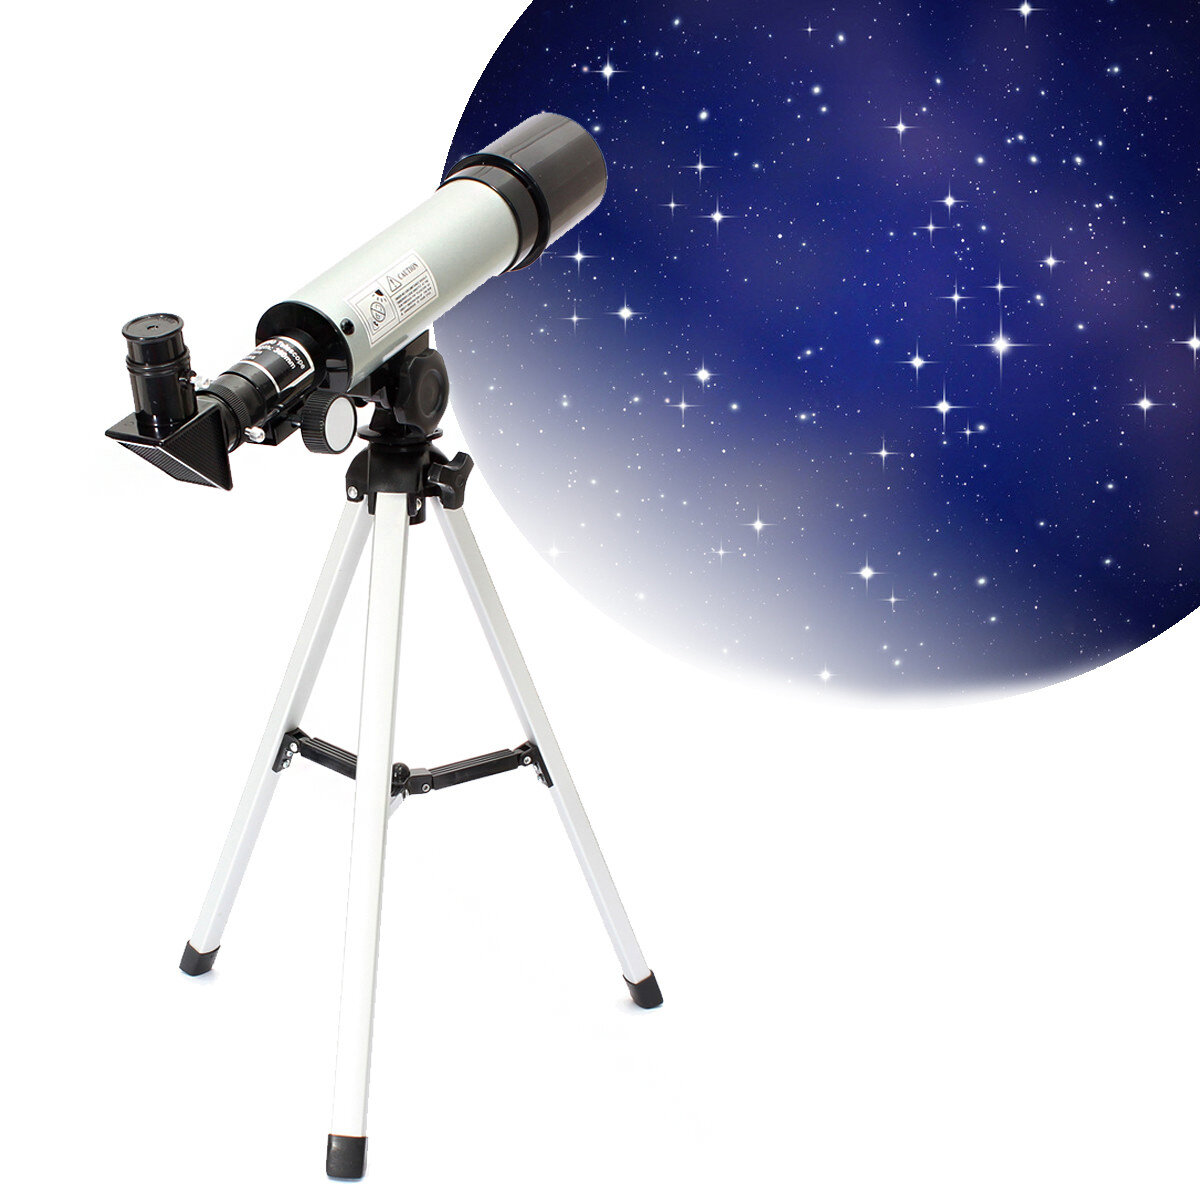 Teleskop IPRee F360x50 z EU za $22.29 / ~88zł